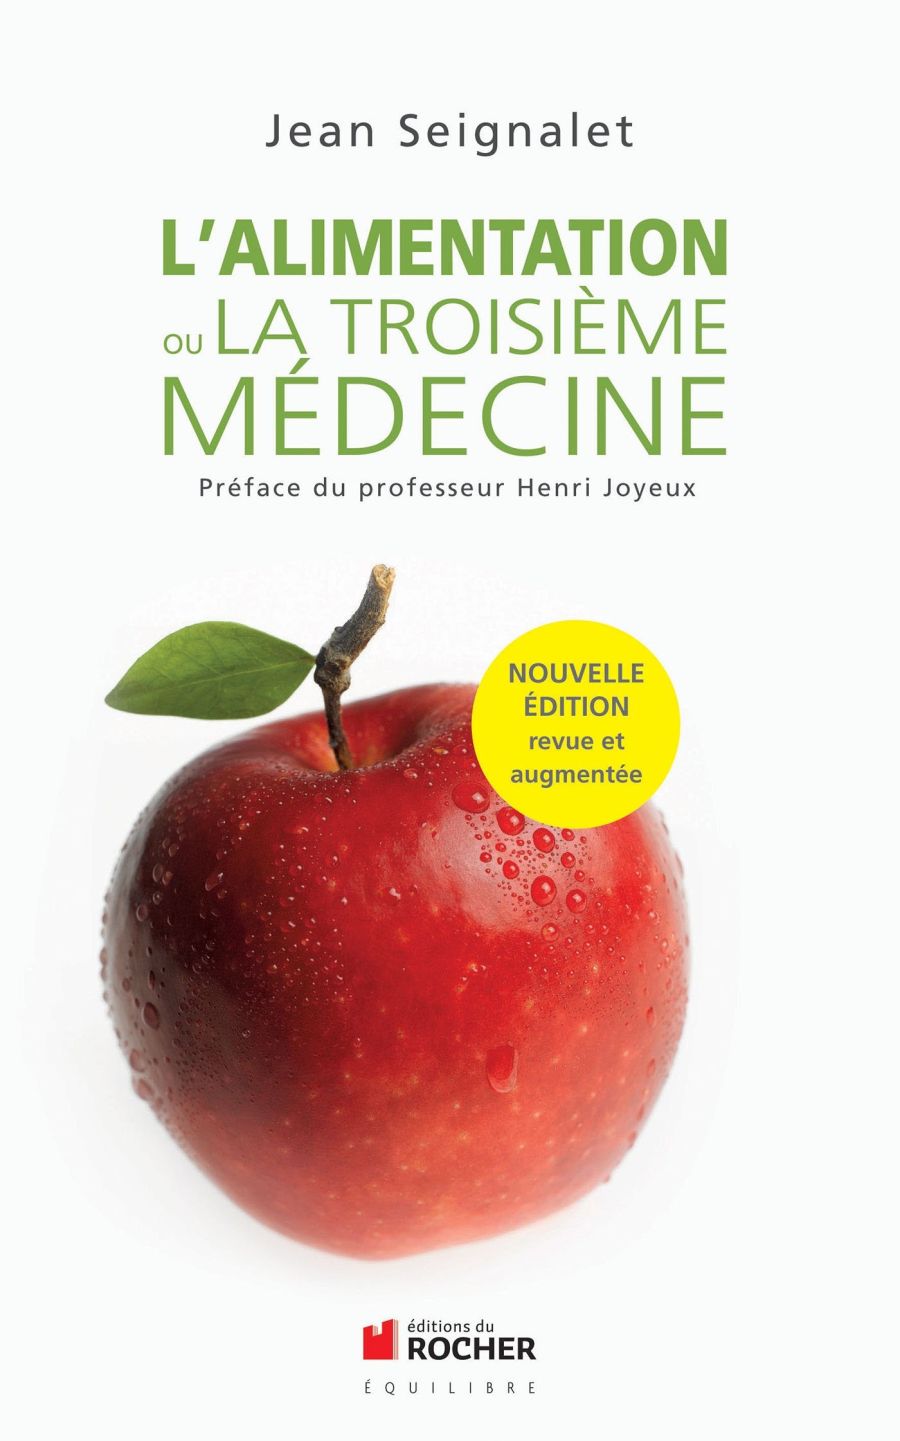 Couverture du livre de Jean Seignalet : 'l’alimentation ou la troisième médecine'